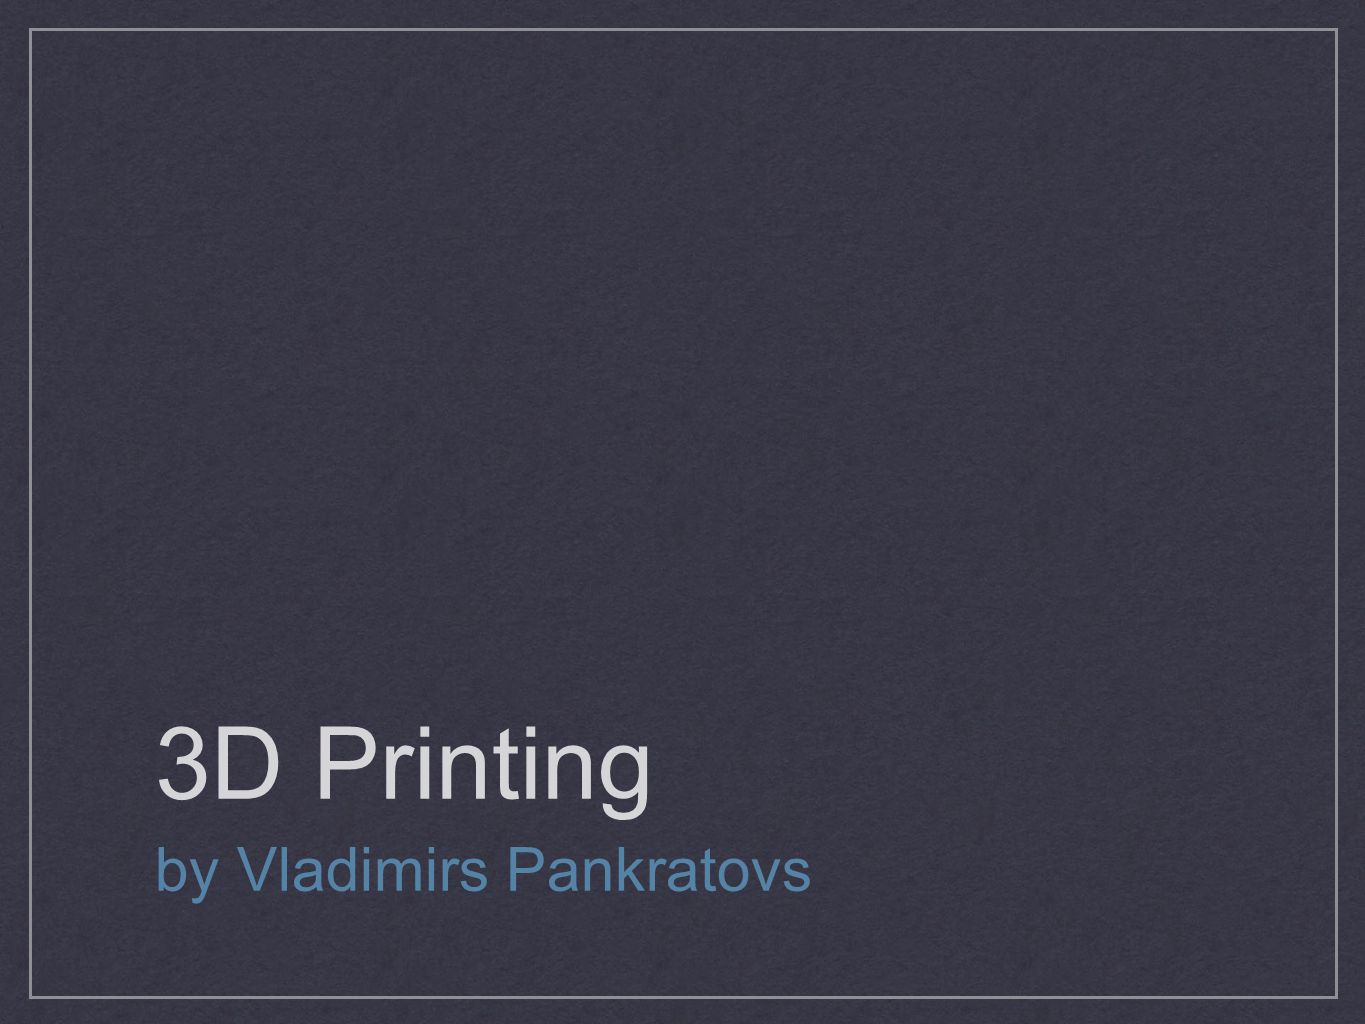 3D Printing by Vladimirs Pankratovs